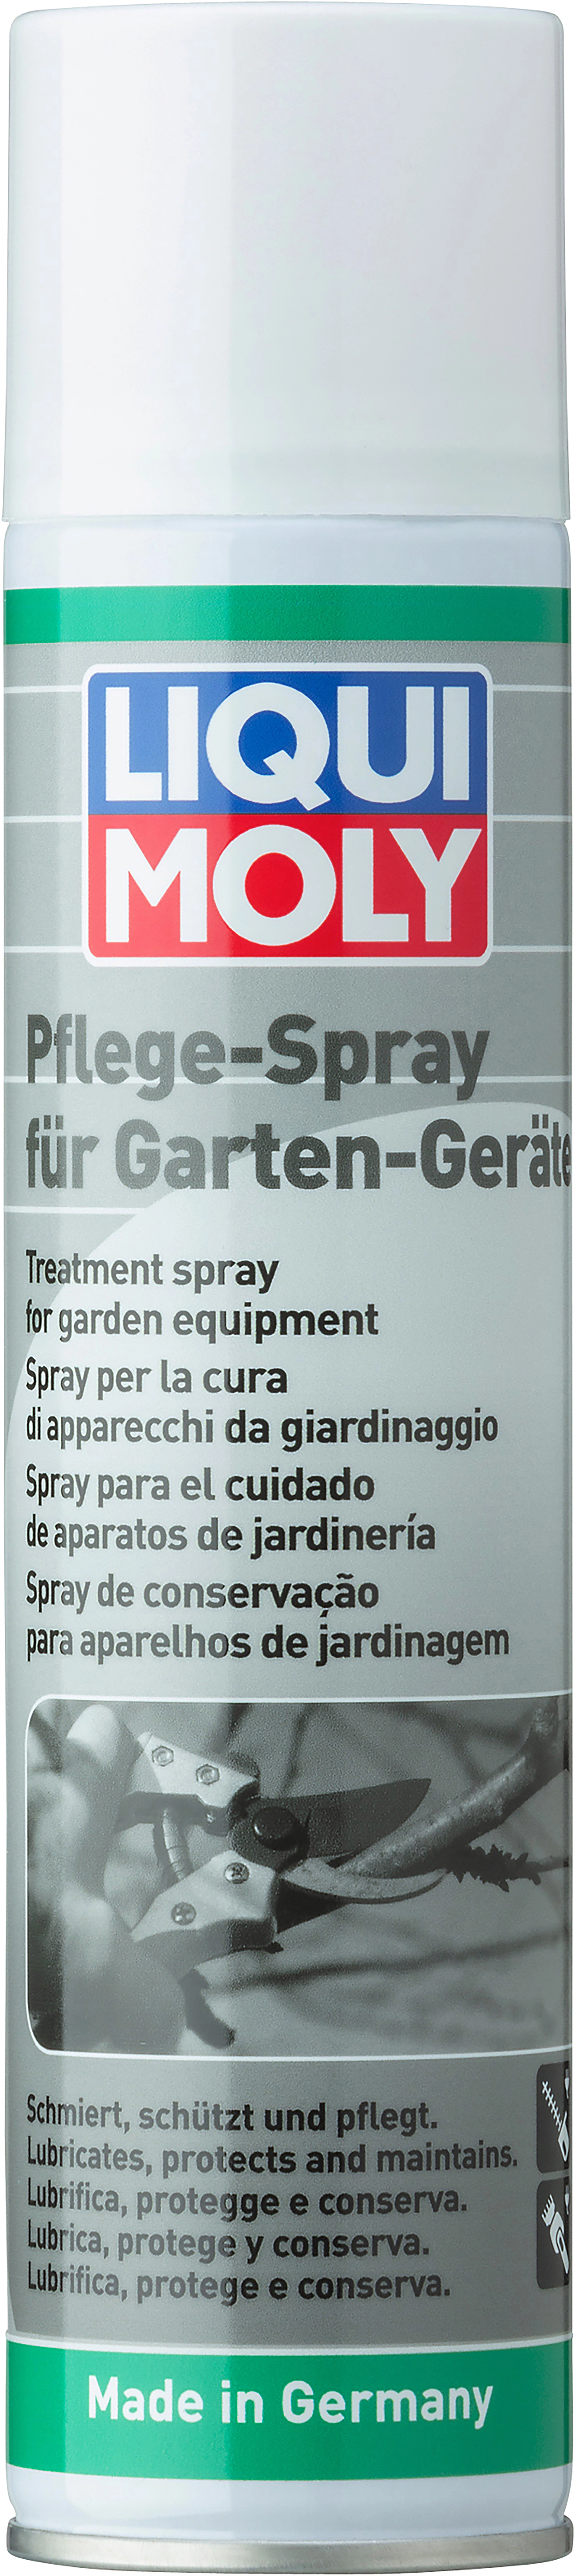 Liqui Moly Pflege-Spray für Garten-Geräte 300 ml kaufen bei OBI